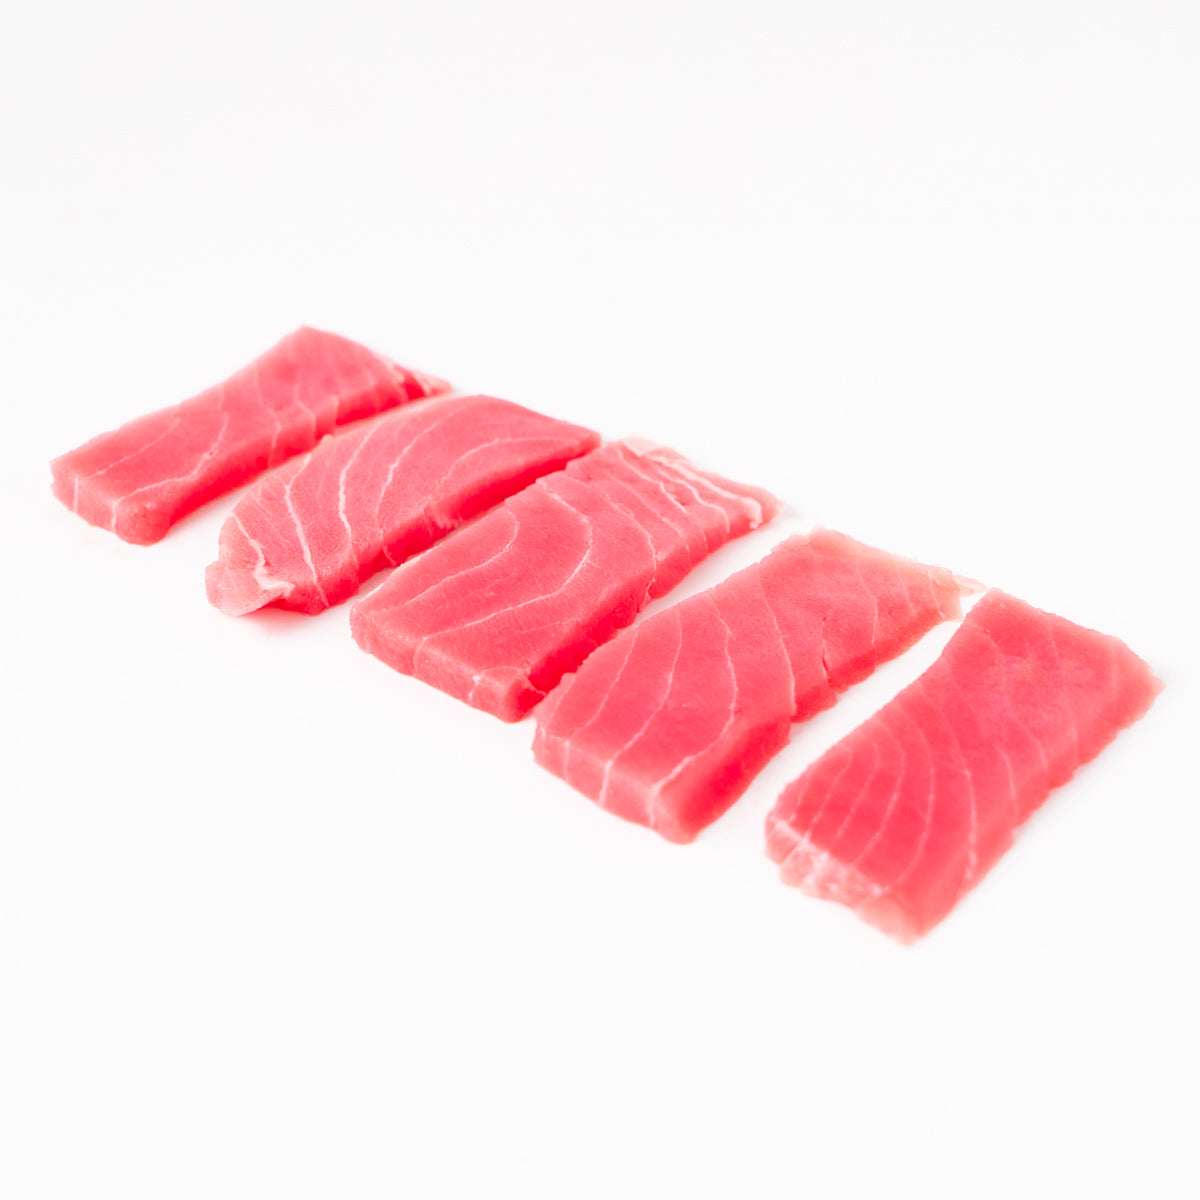 corte de sashimi de atun aleta amarilla